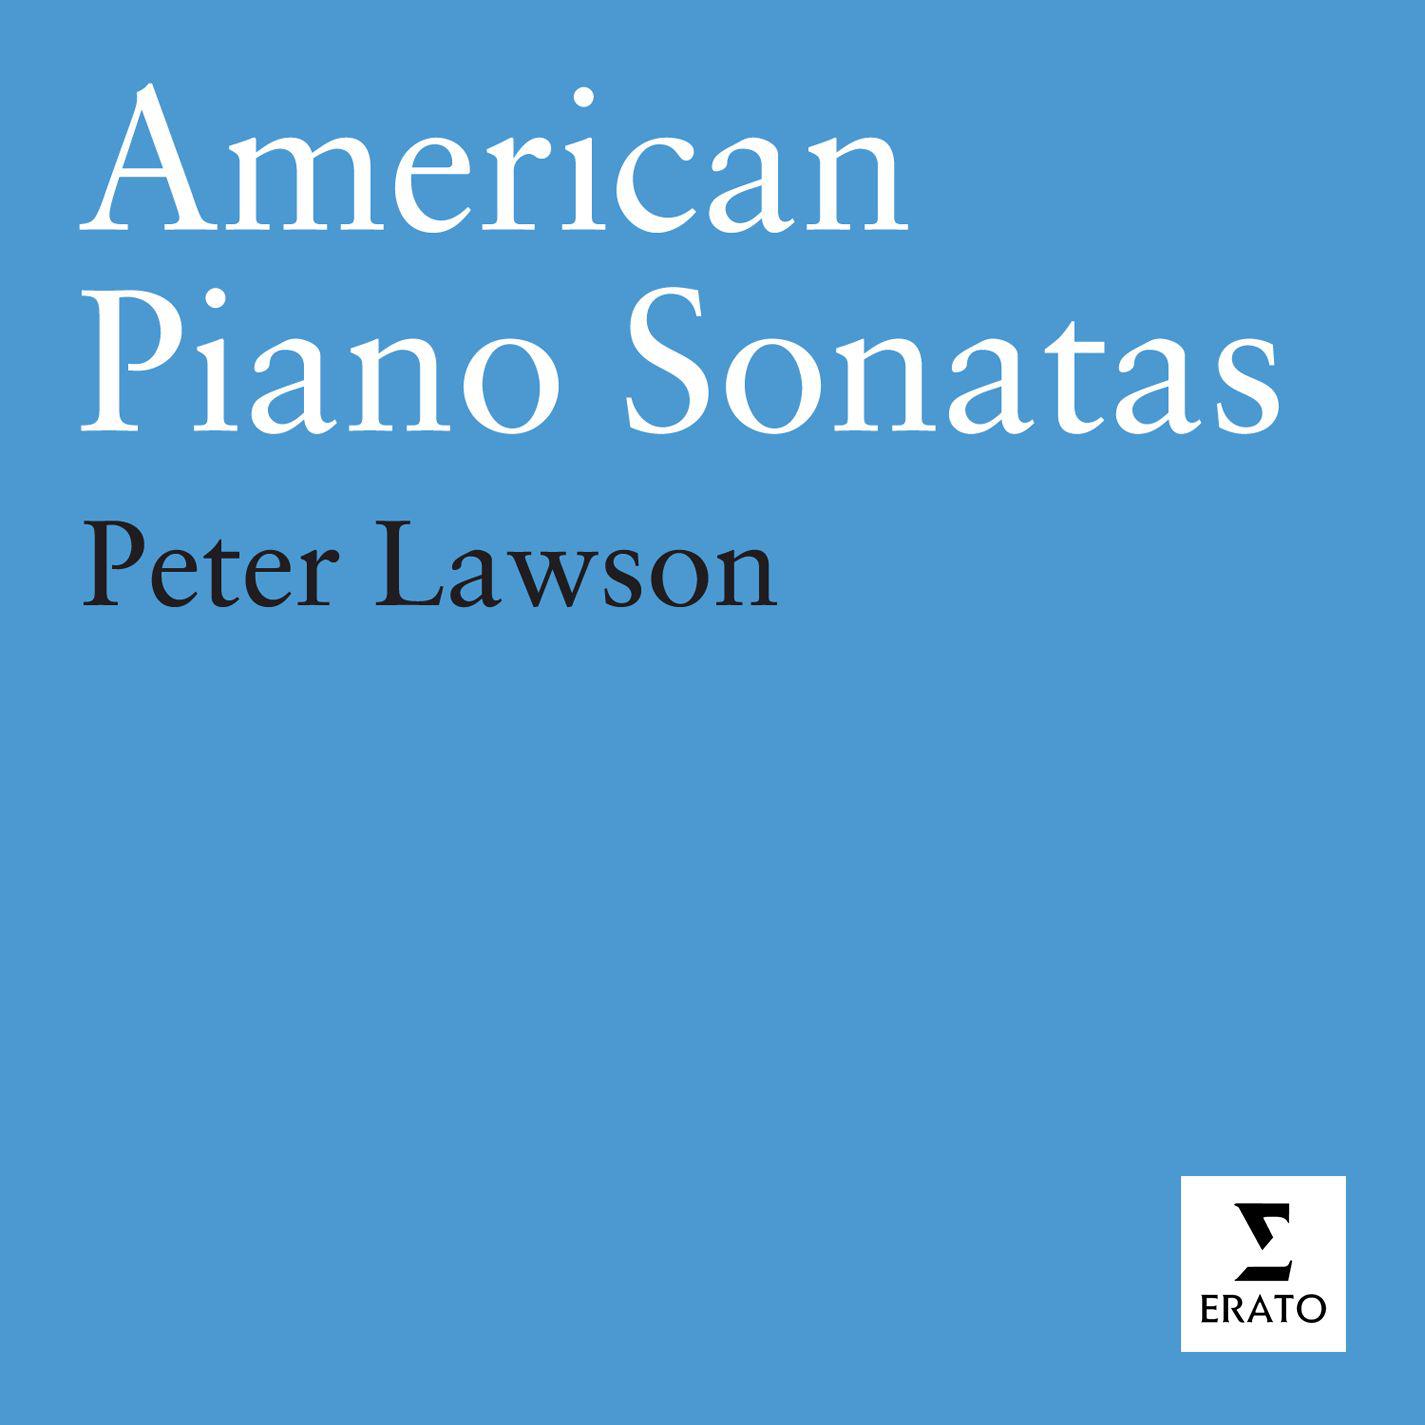 American Piano Sonatas